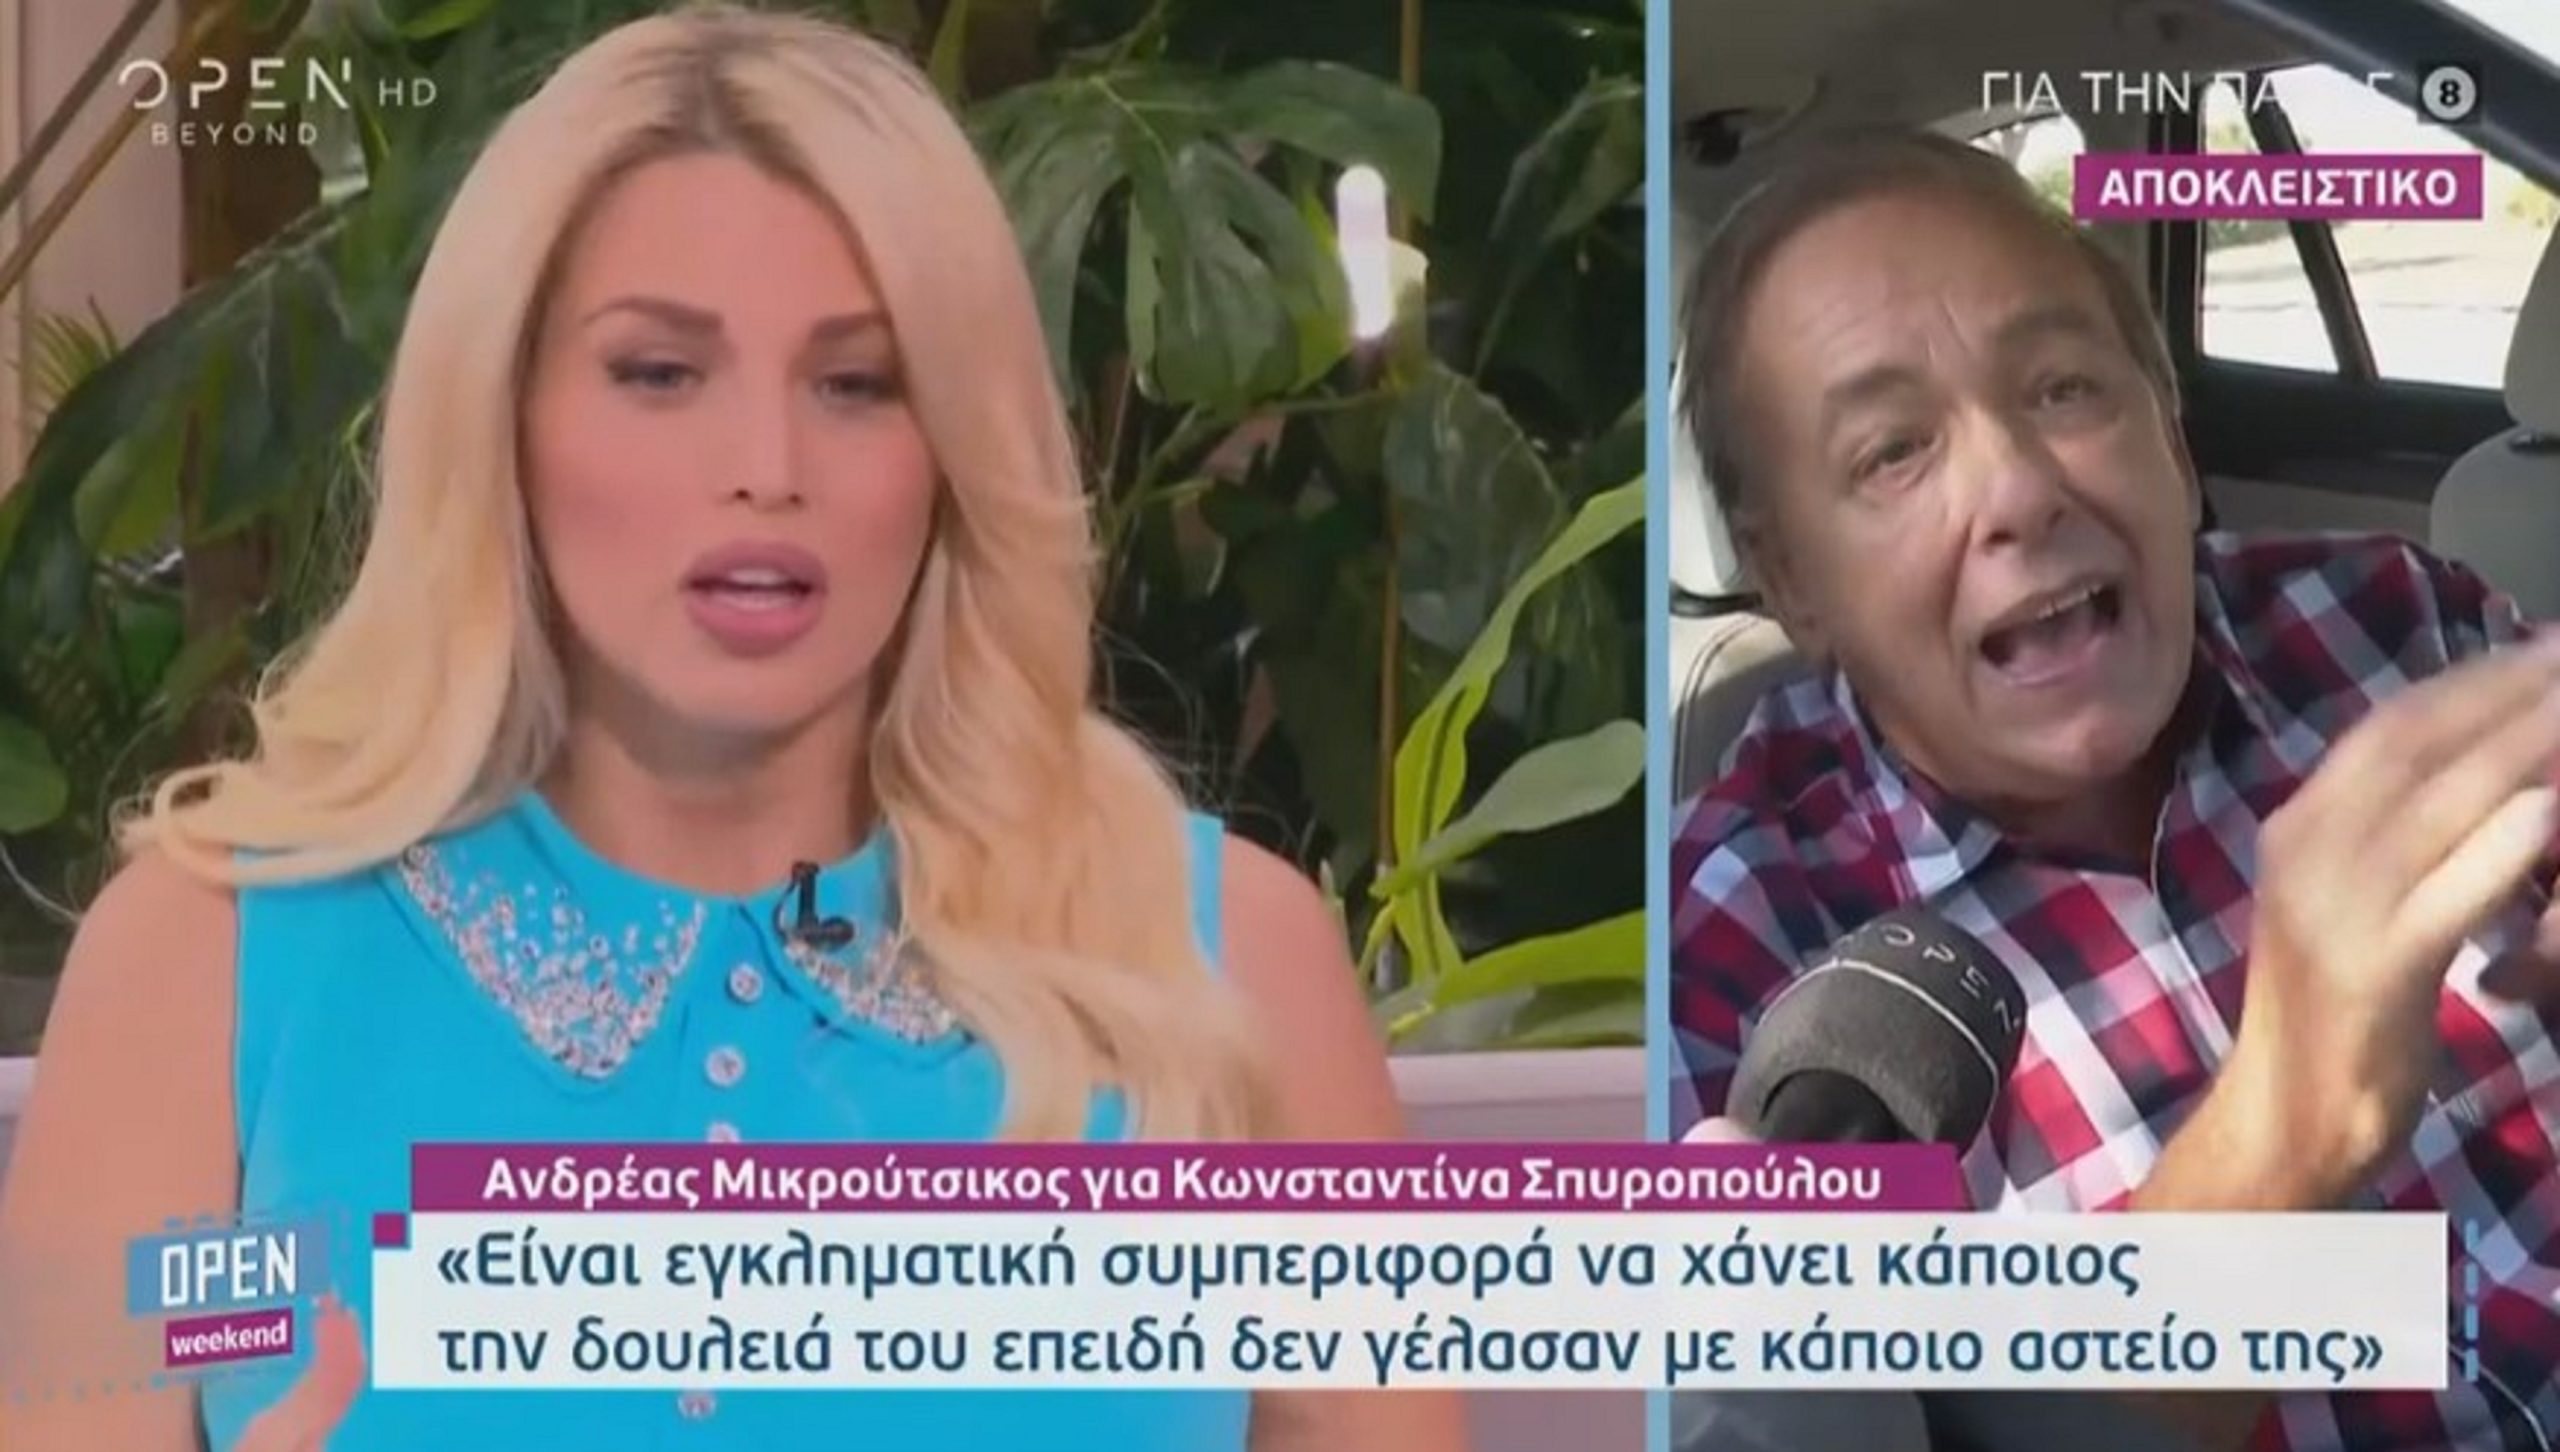 Ανδρέας Μικρούτσικος για Κωνσταντίνα Σπυροπούλου: Είναι ένα τηλεοπτικό πρόσωπο μηδενικής τηλεοπτικής αξίας